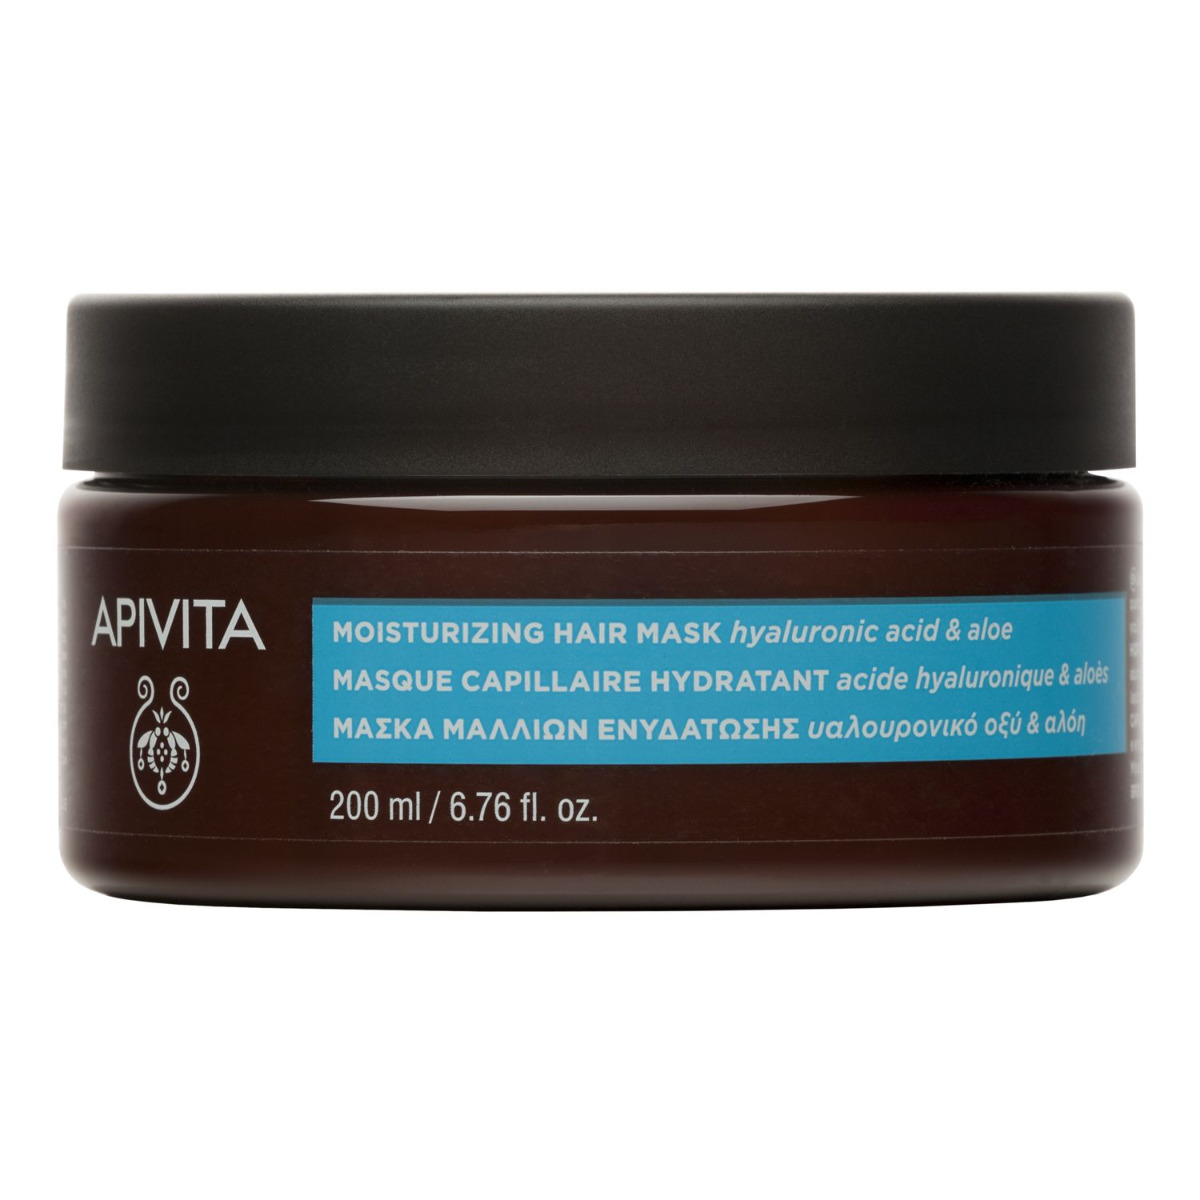 APIVITA Hydration hydratační vlasová maska 200 ml APIVITA